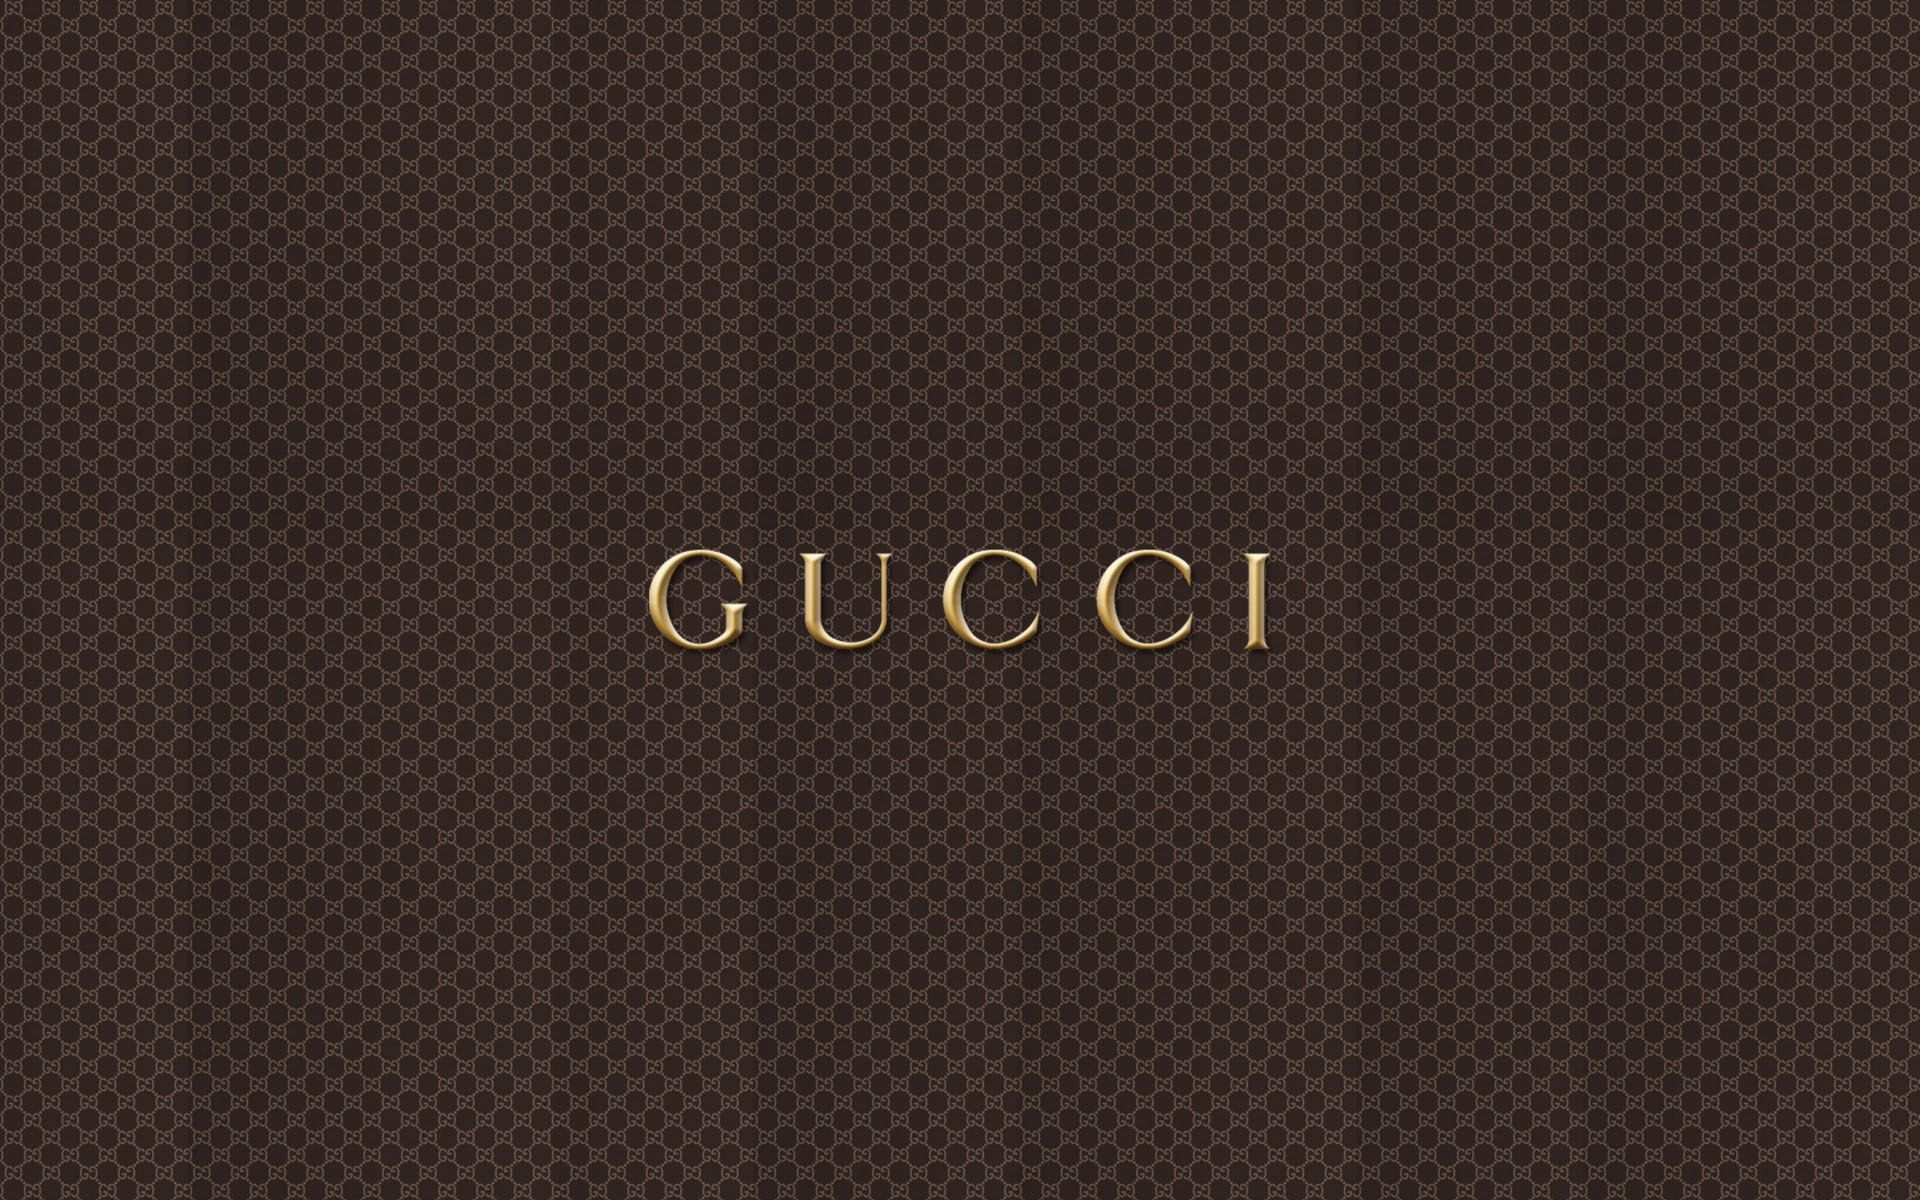 Gucci Mane Wallpaper. Gucci Dope